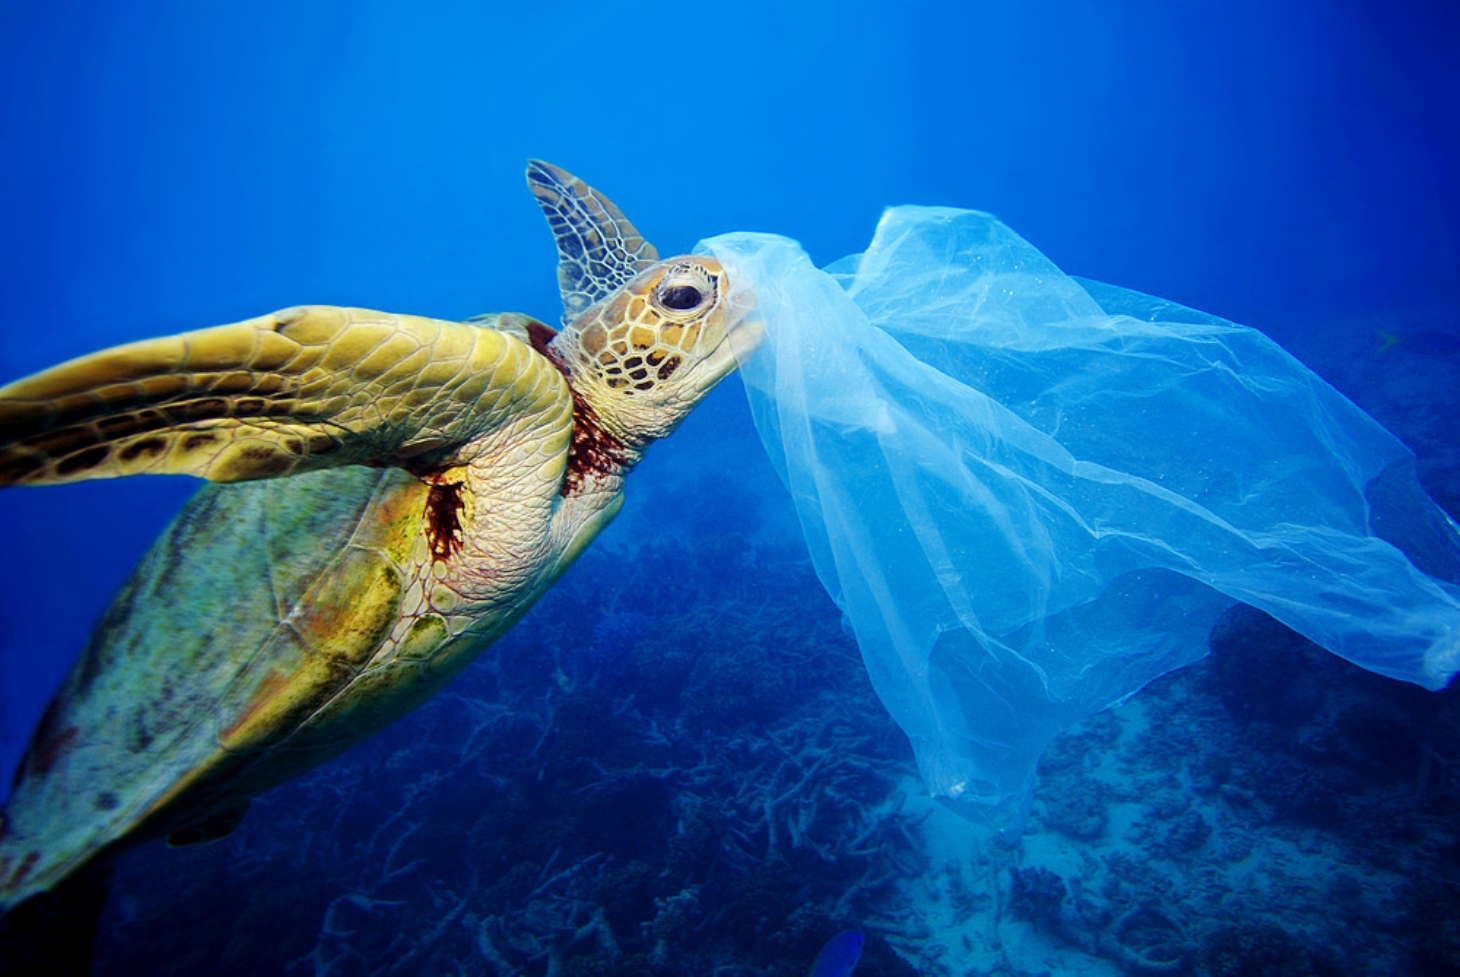 Poluição de plástico em oceanos pode triplicar até 2040, alerta pesquisa | Jornal da Orla